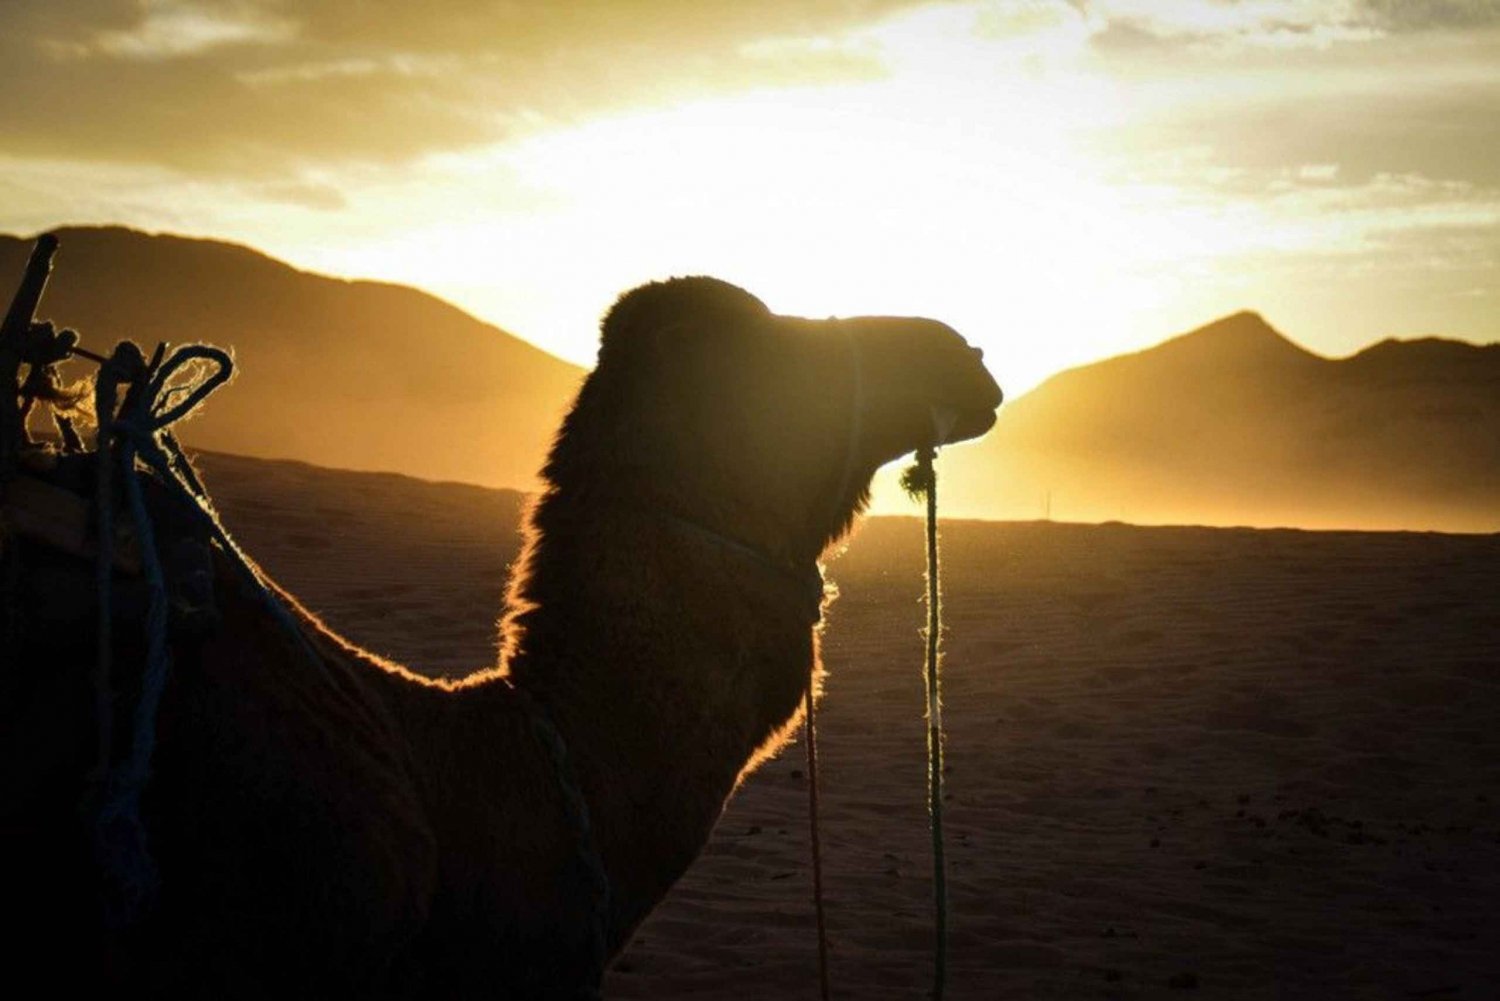 Z Marrakeszu: 2-dniowa wycieczka na pustynię